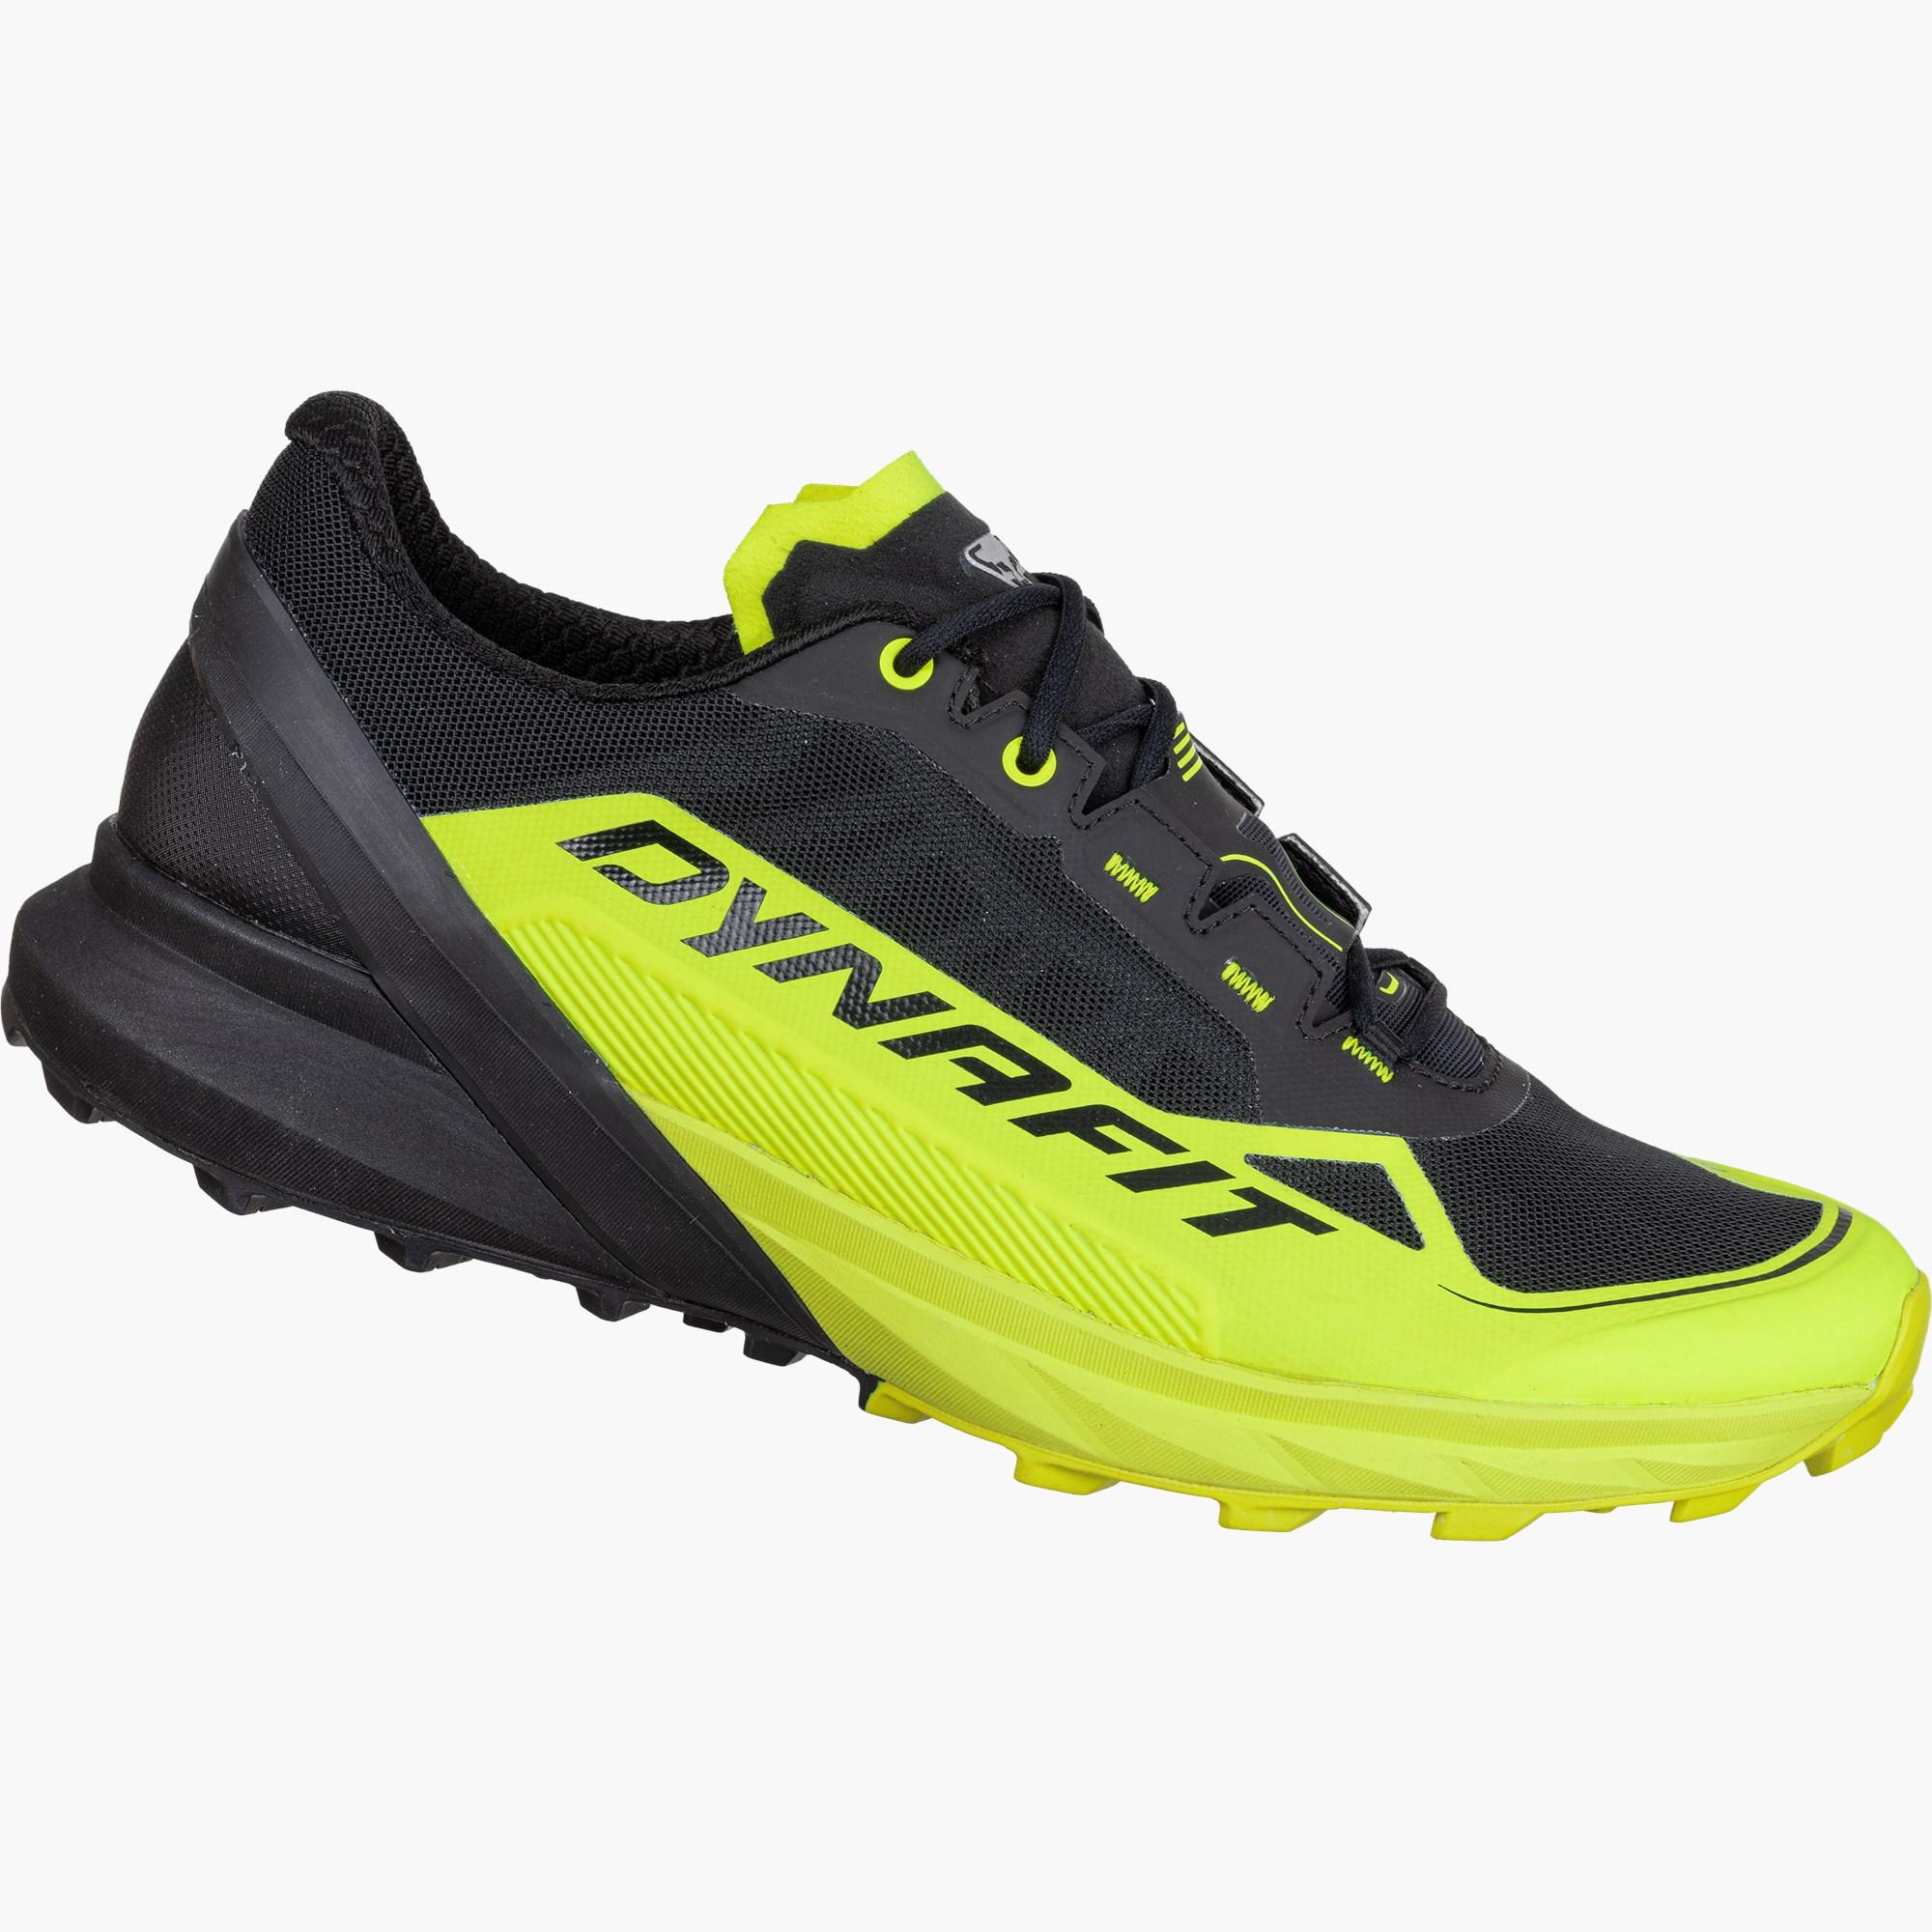 DYNAFIT Zapatillas trekking hombre Ultra 50 con suela Ortholite y Pomoca  calzado deportivo sneakers 64066 azul